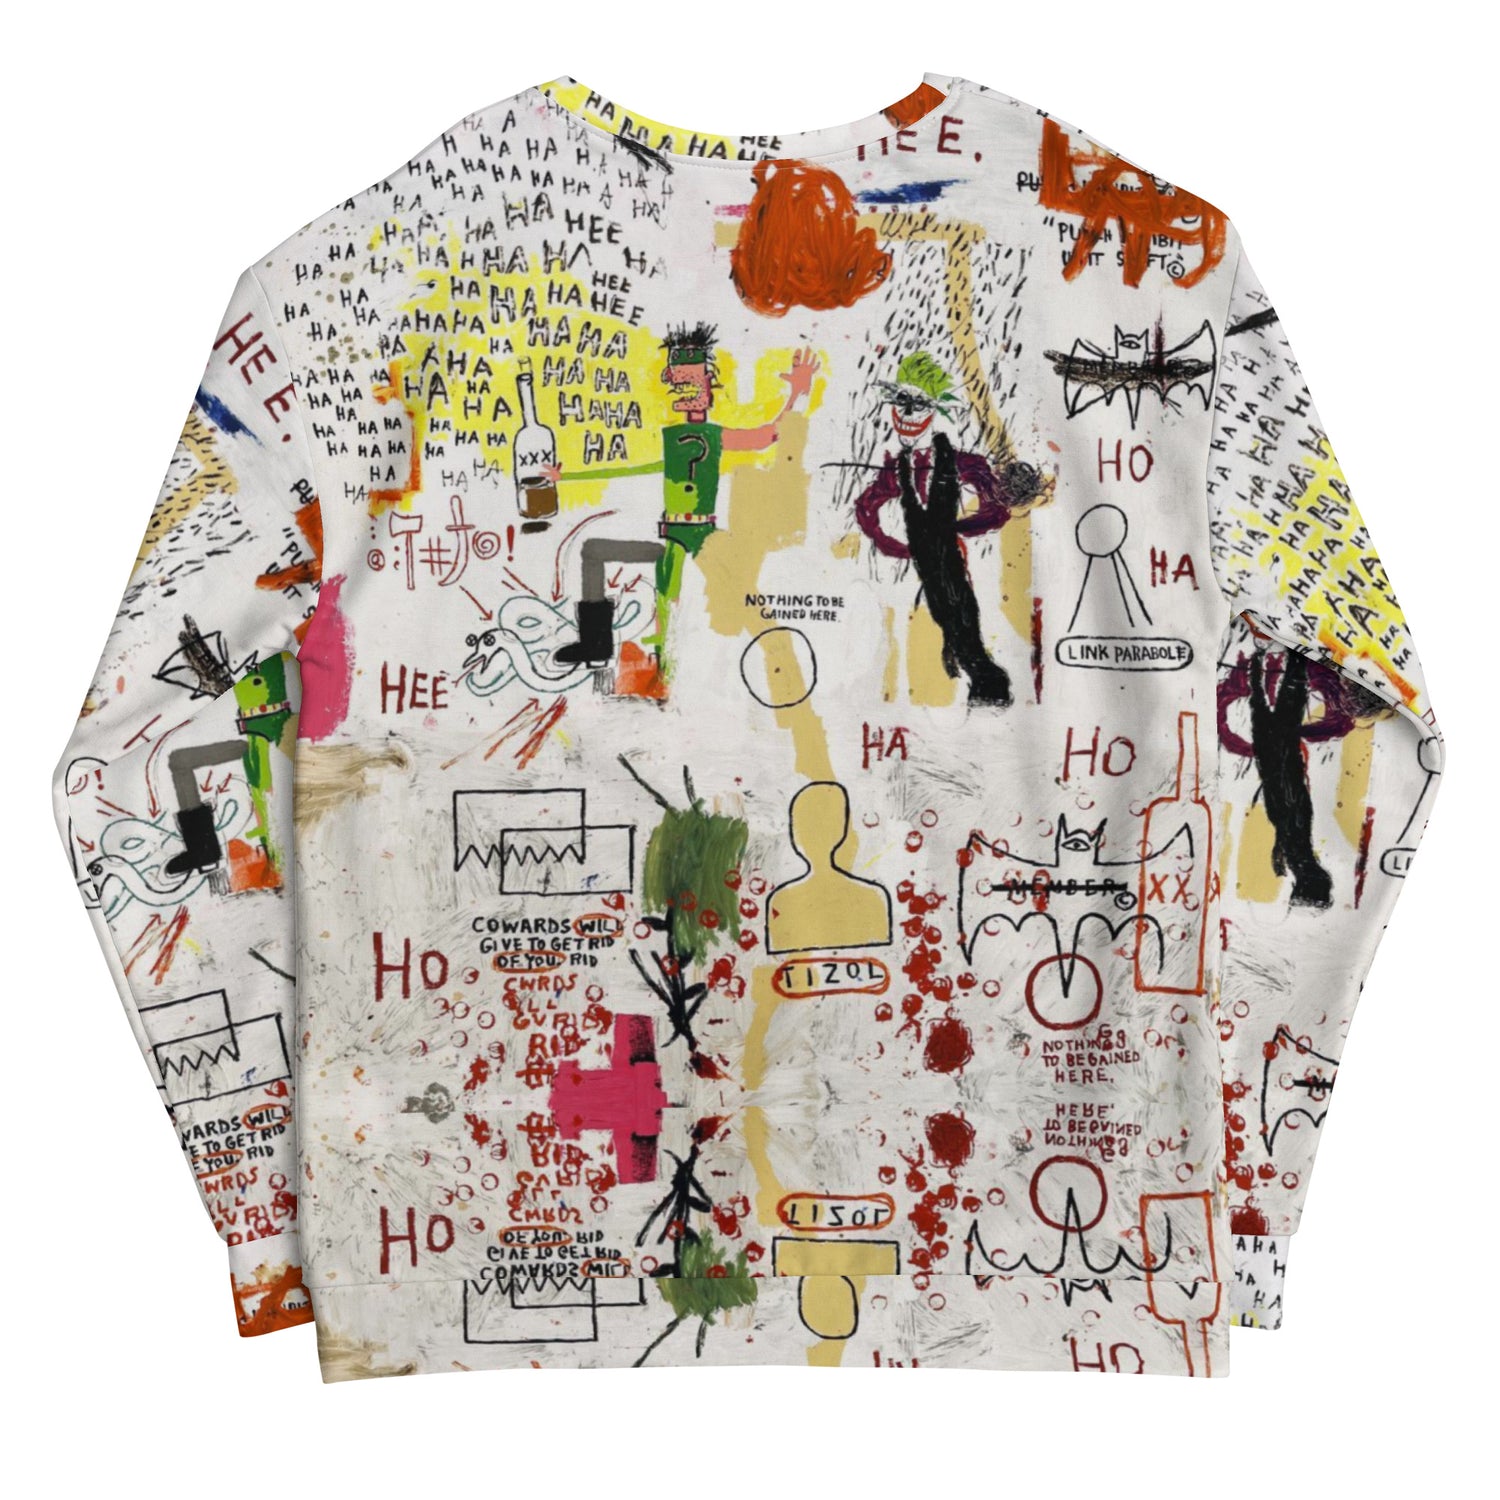 Jean-Michel Basquiat "Riddle Me This Batman" Artwork Printed Premium Streetwear Crewneck Sweatshirt Harajuku Graffiti